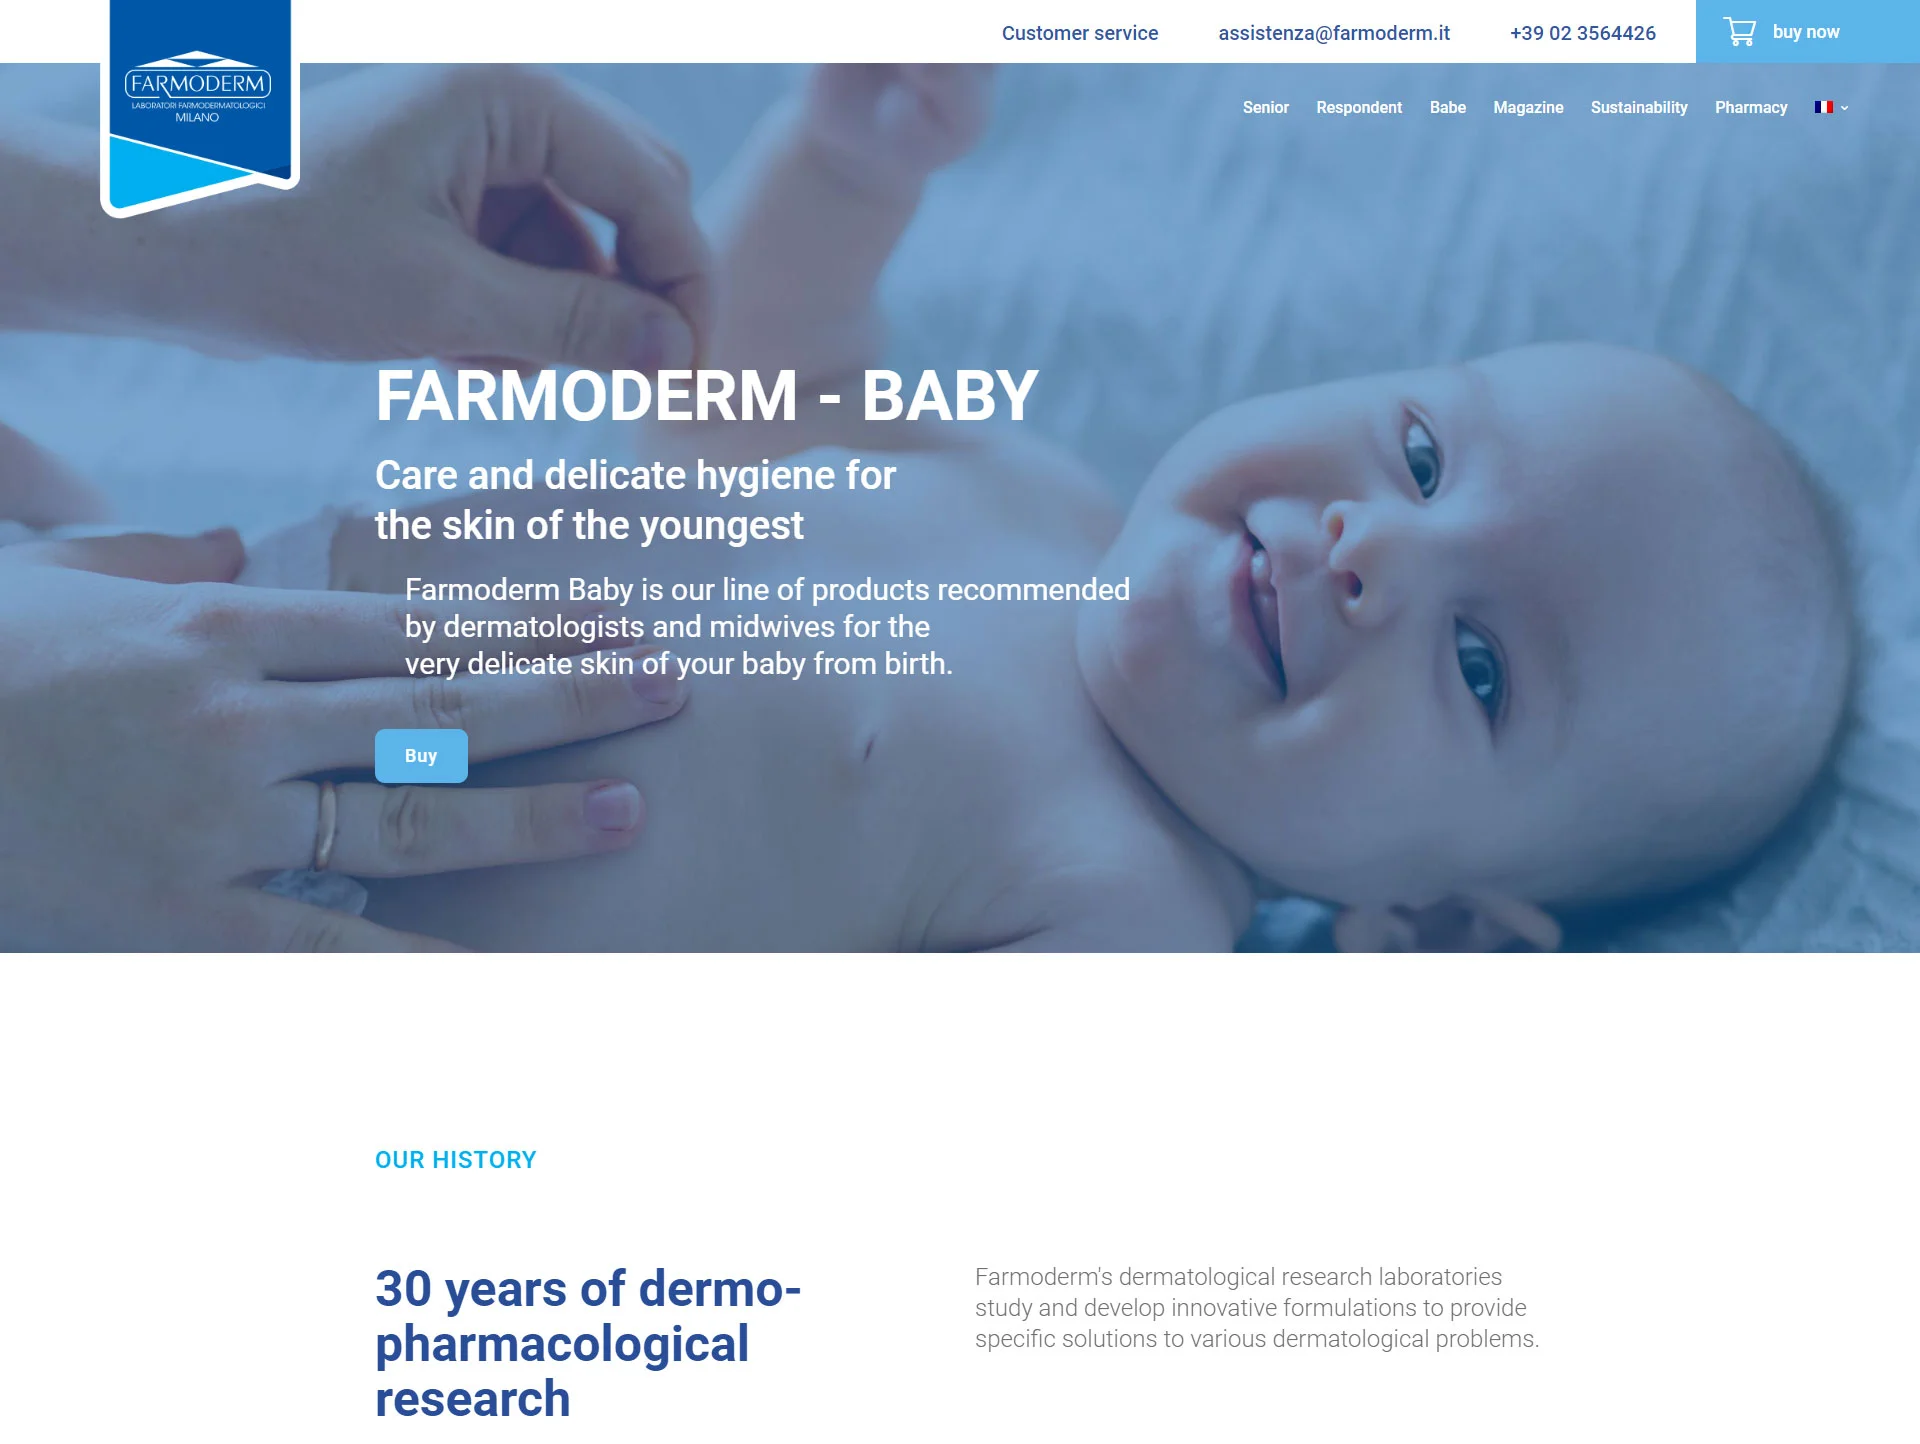 Farmoderm - Baby portfolio